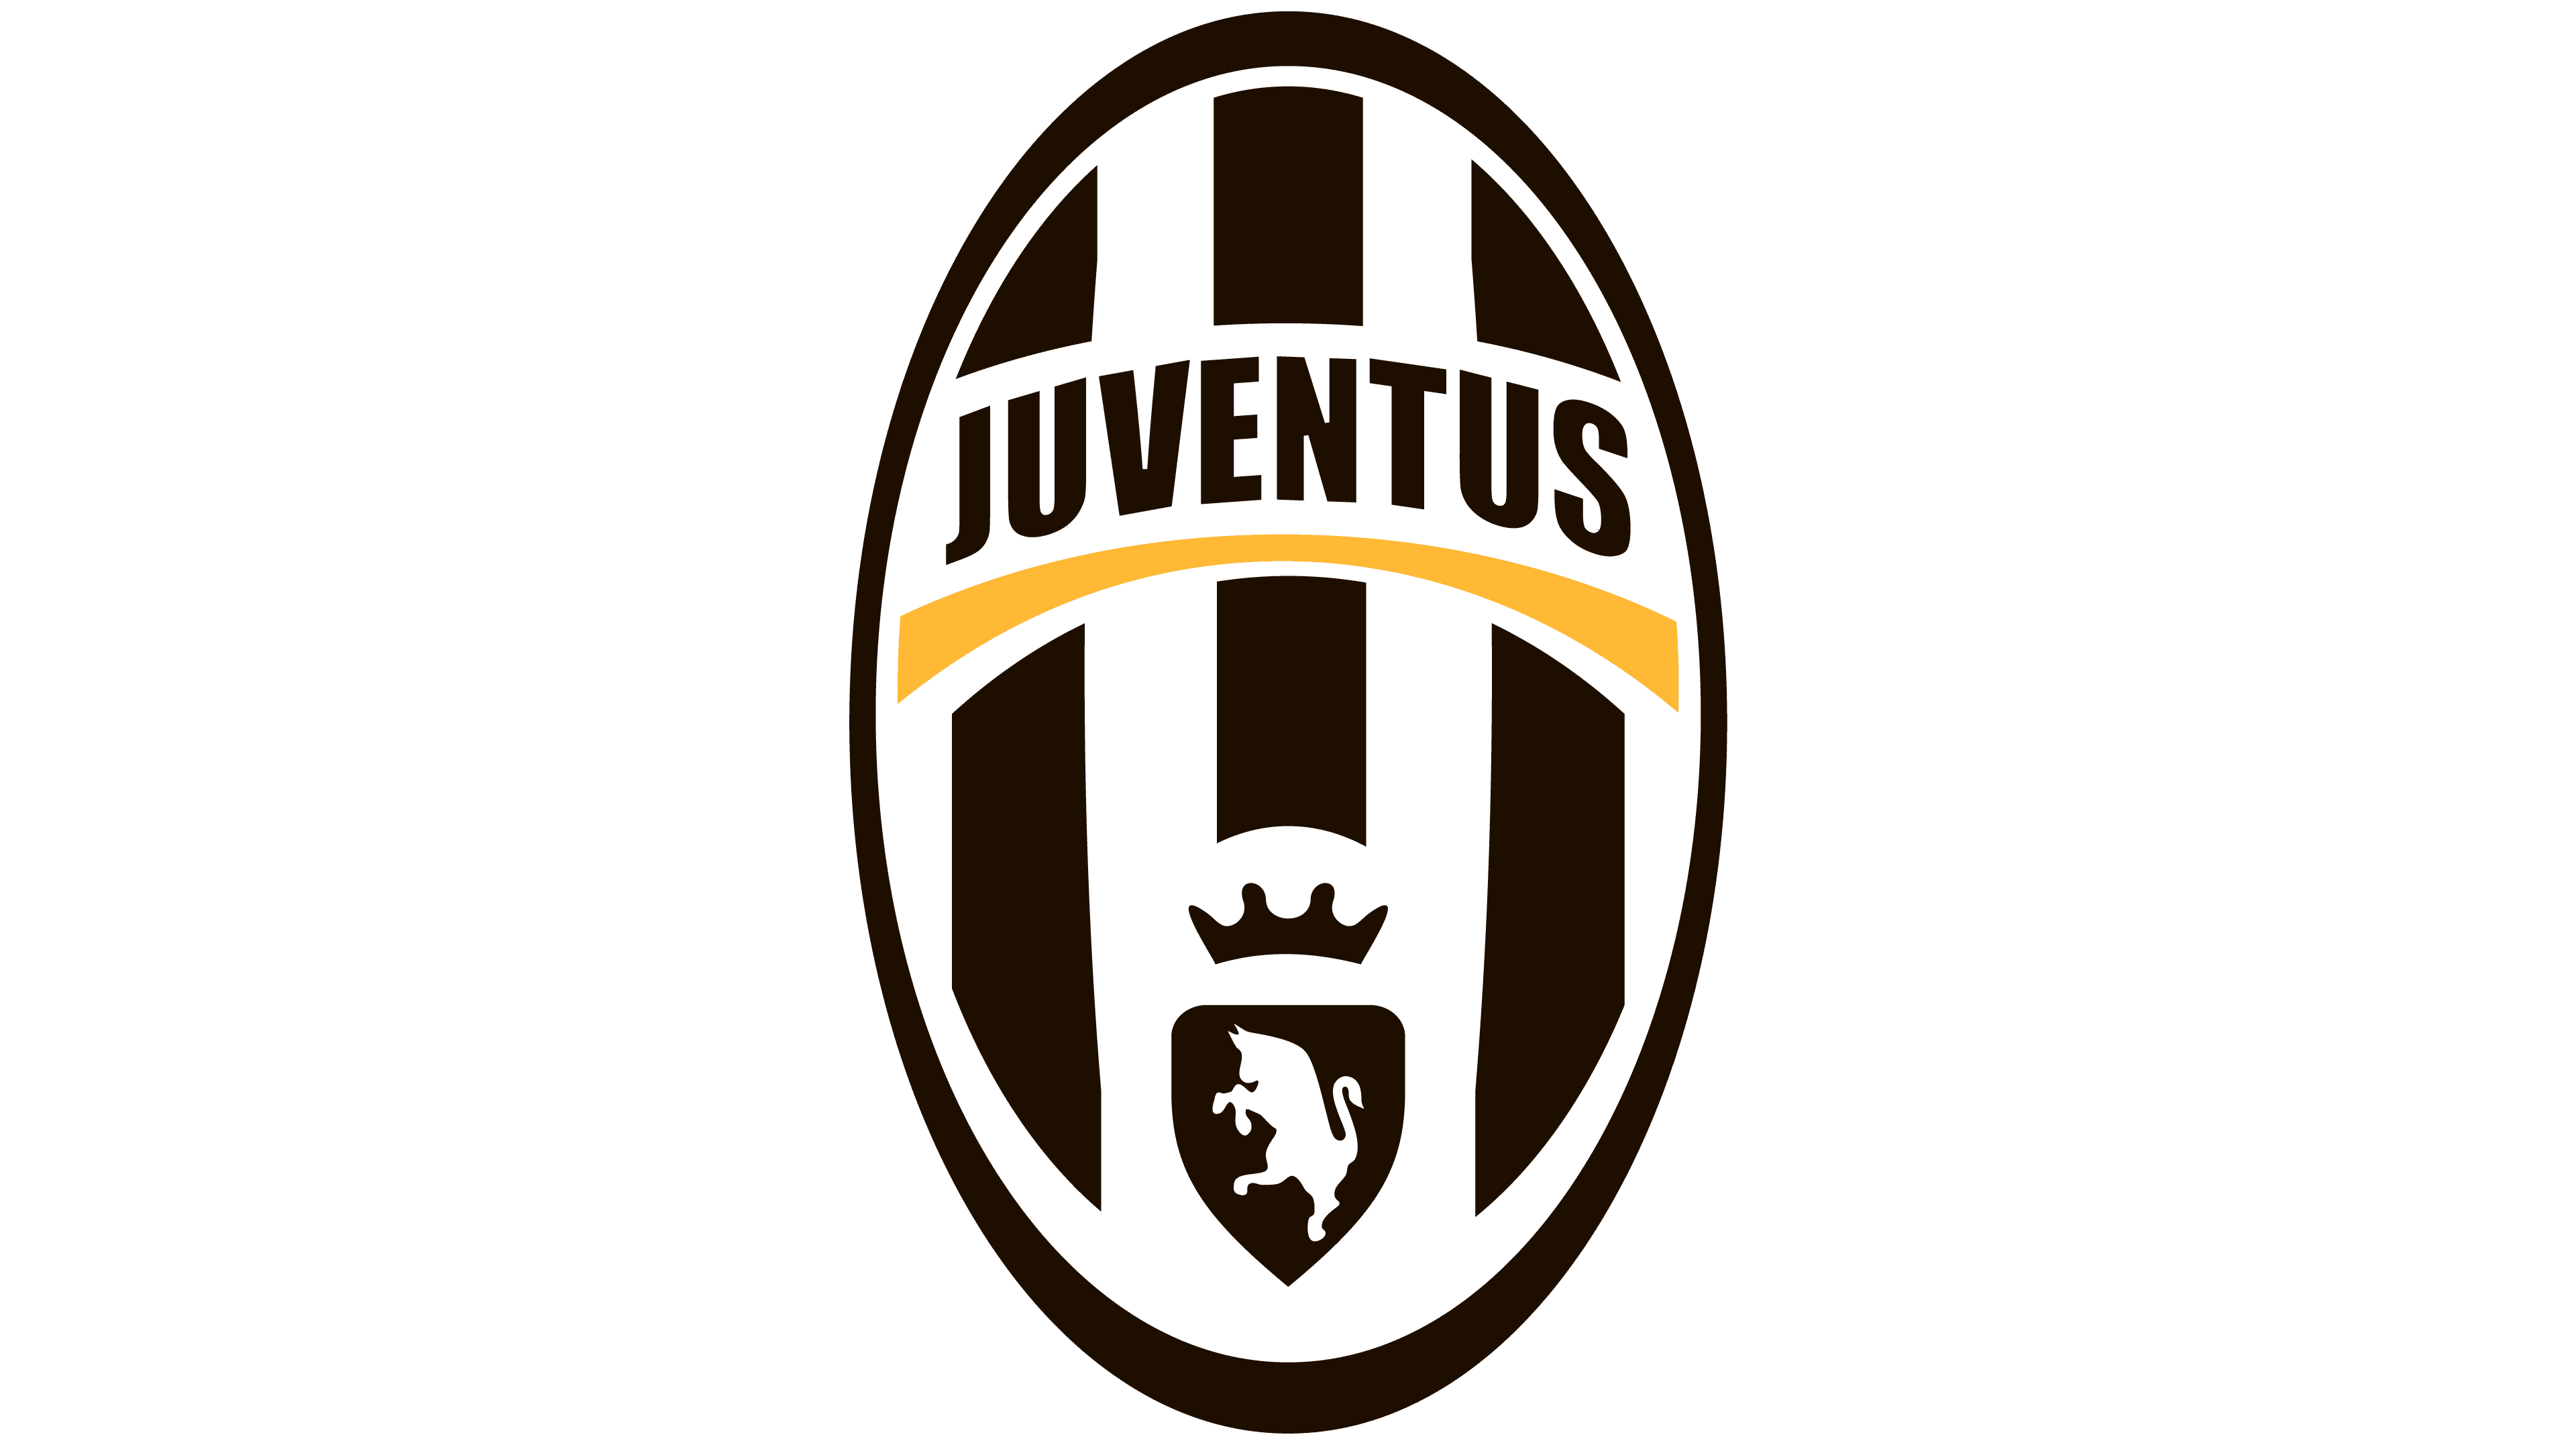 Download Juventus Logo Images